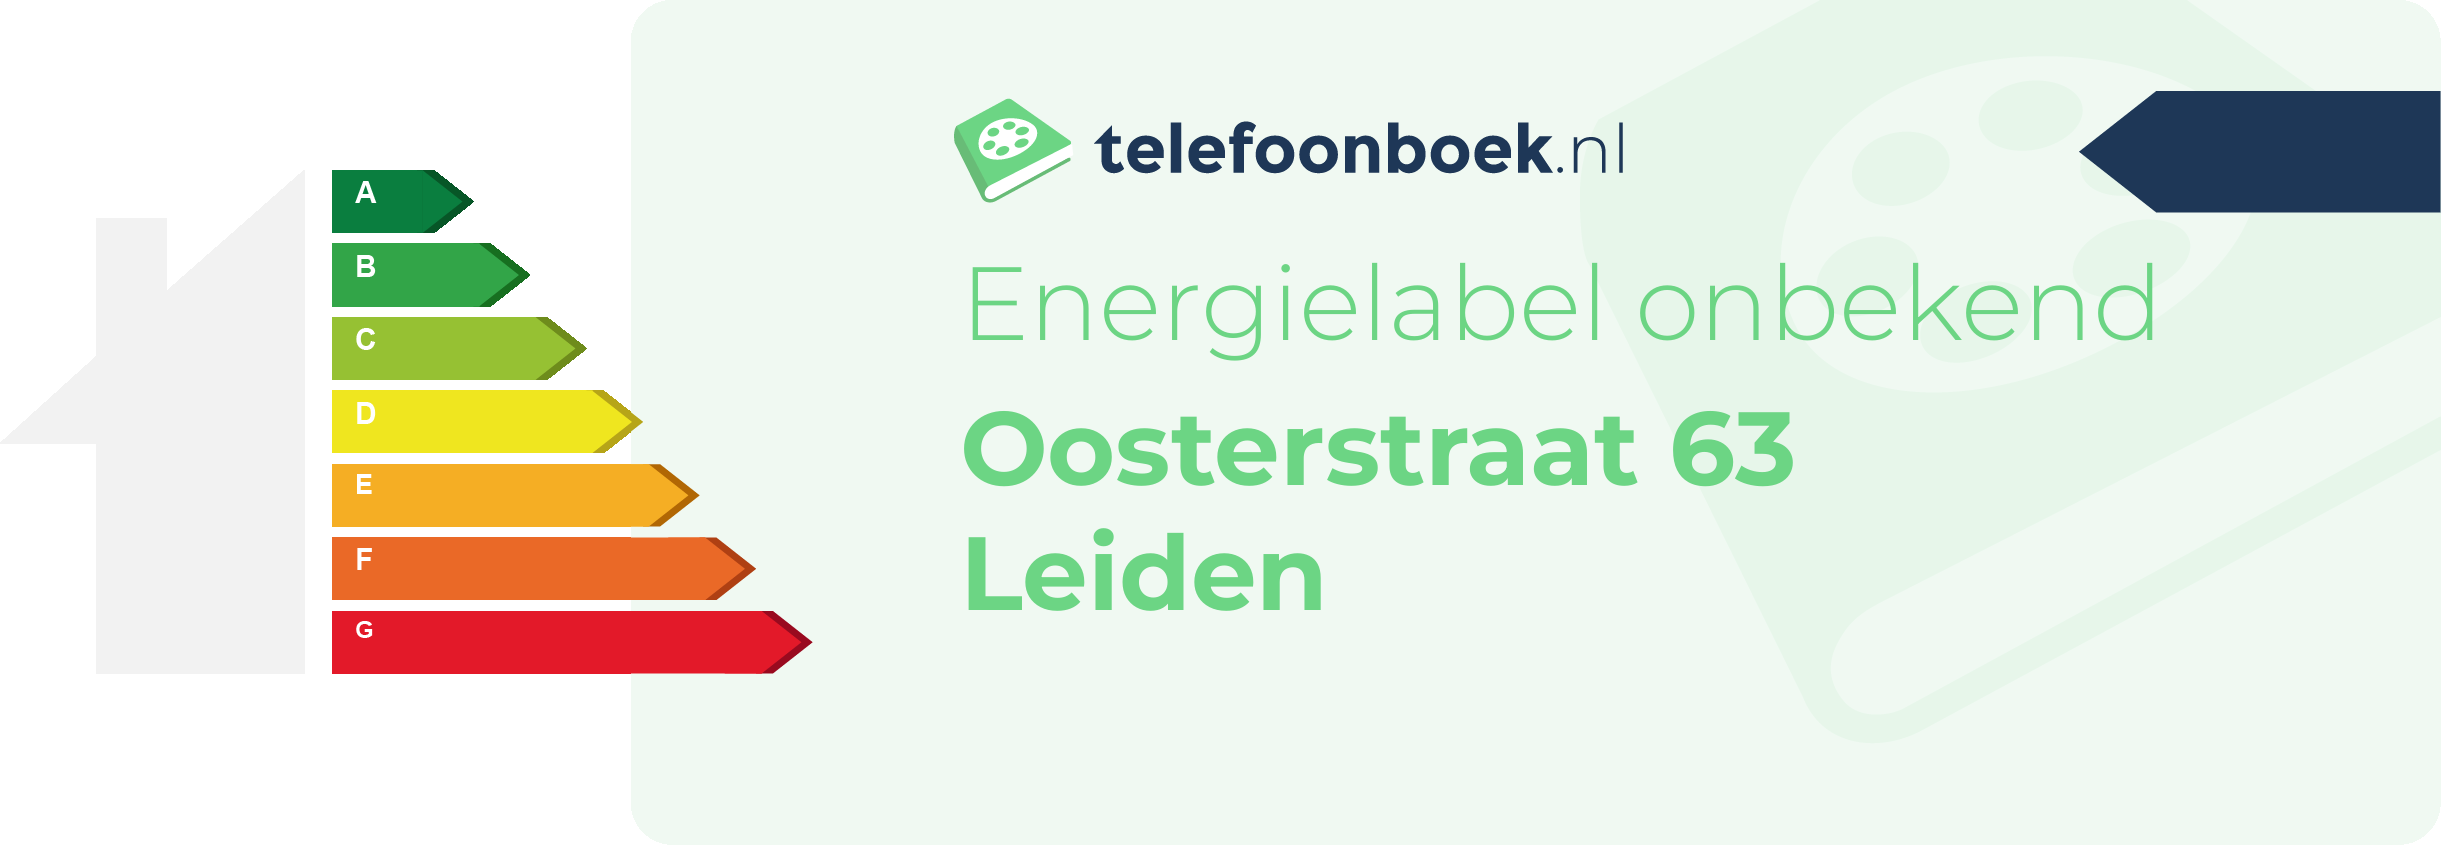 Energielabel Oosterstraat 63 Leiden